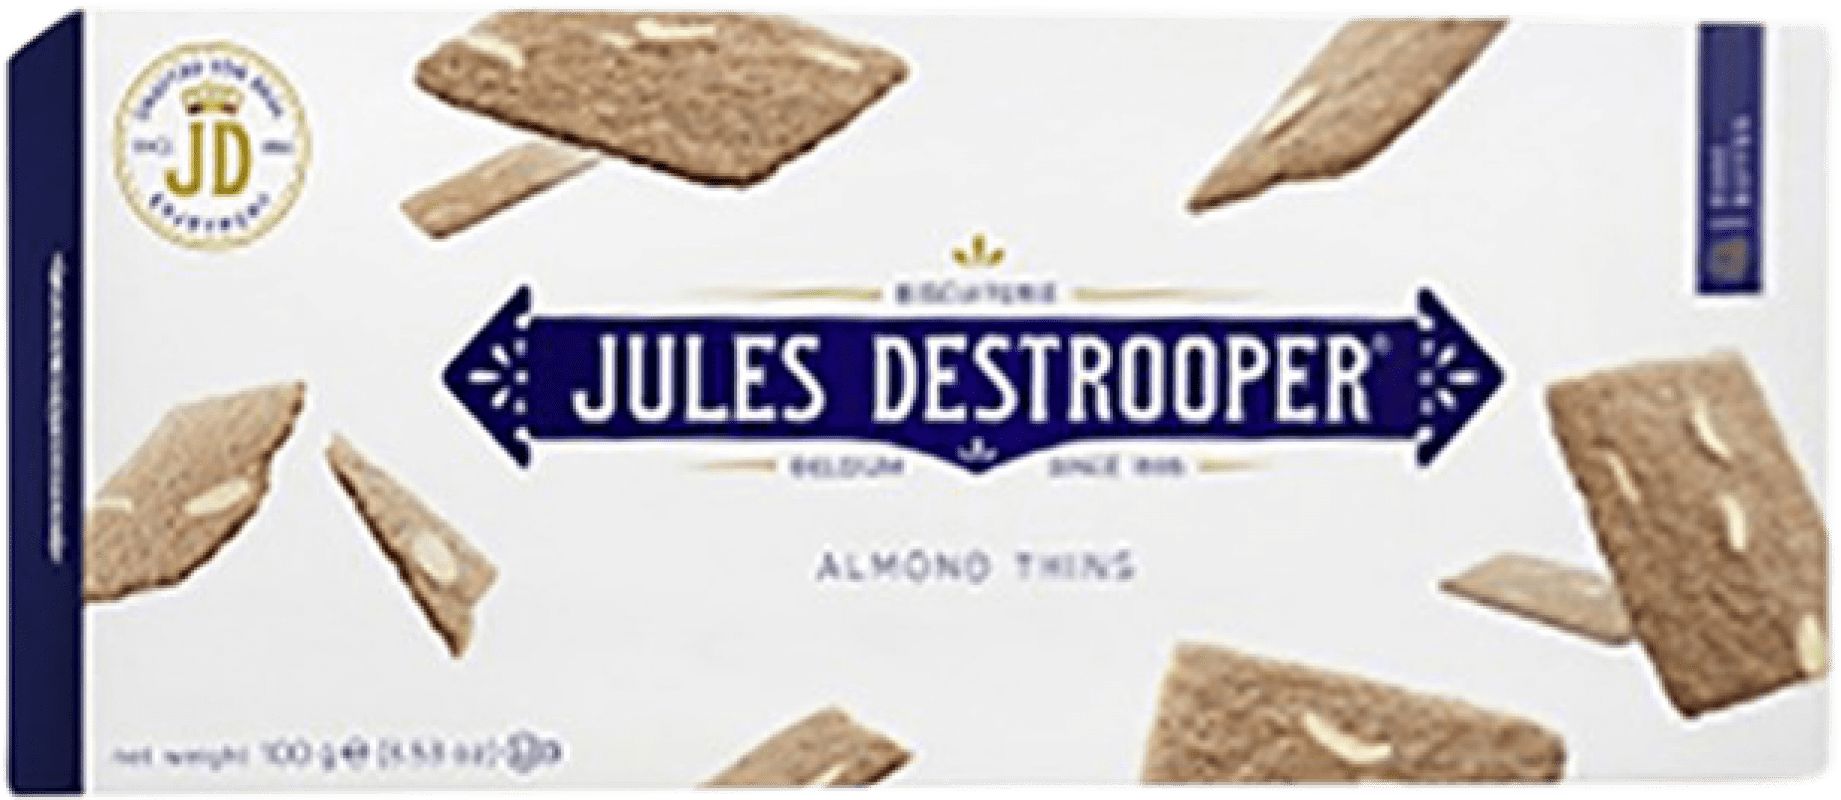 3,95 € Kostenloser Versand | Vorspeisen und Snacks Jules Destrooper Destrooper Belgien